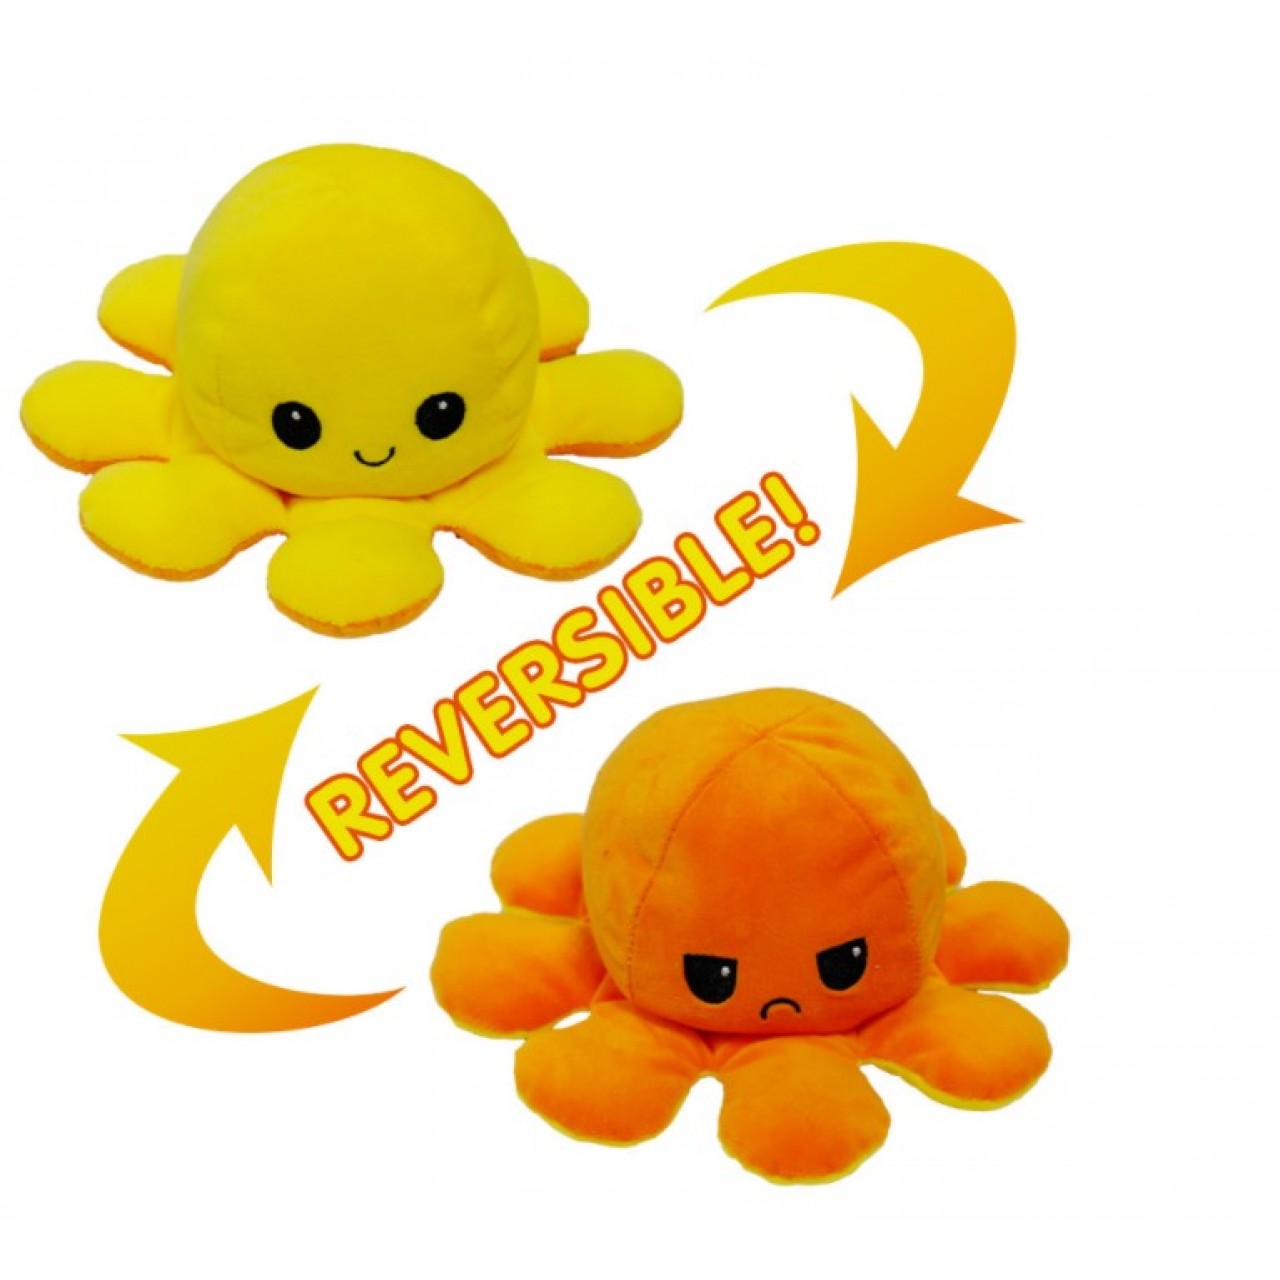 Χταπόδι διπλής όψης λούτρινο emotional reversible octopus plush 12 εκ - 5242 - Πορτοκαλί / Κίτρινο